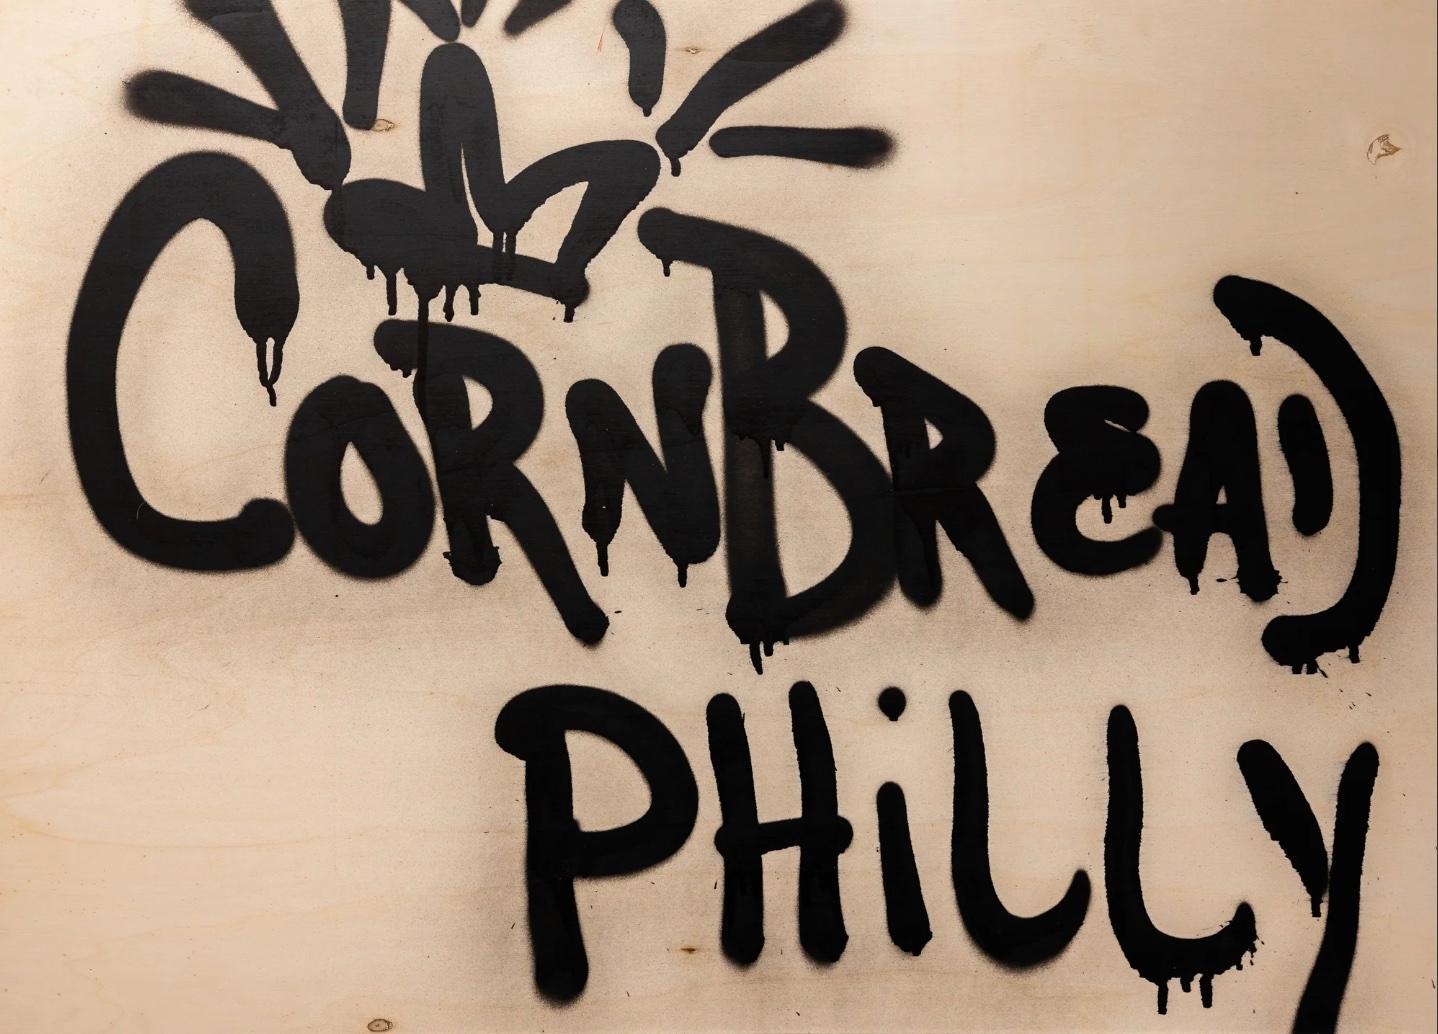 Cette œuvre d'art intitulée "Fresh Cut : Cornbread Philly" est une œuvre originale de Cornbread réalisée à l'acrylique sur bois. L'œuvre mesure 89,5cm x 125cm / 35,25in x 49,25in sans cadre, et est expédiée sans cadre.

Darryl McCray, connu sous son